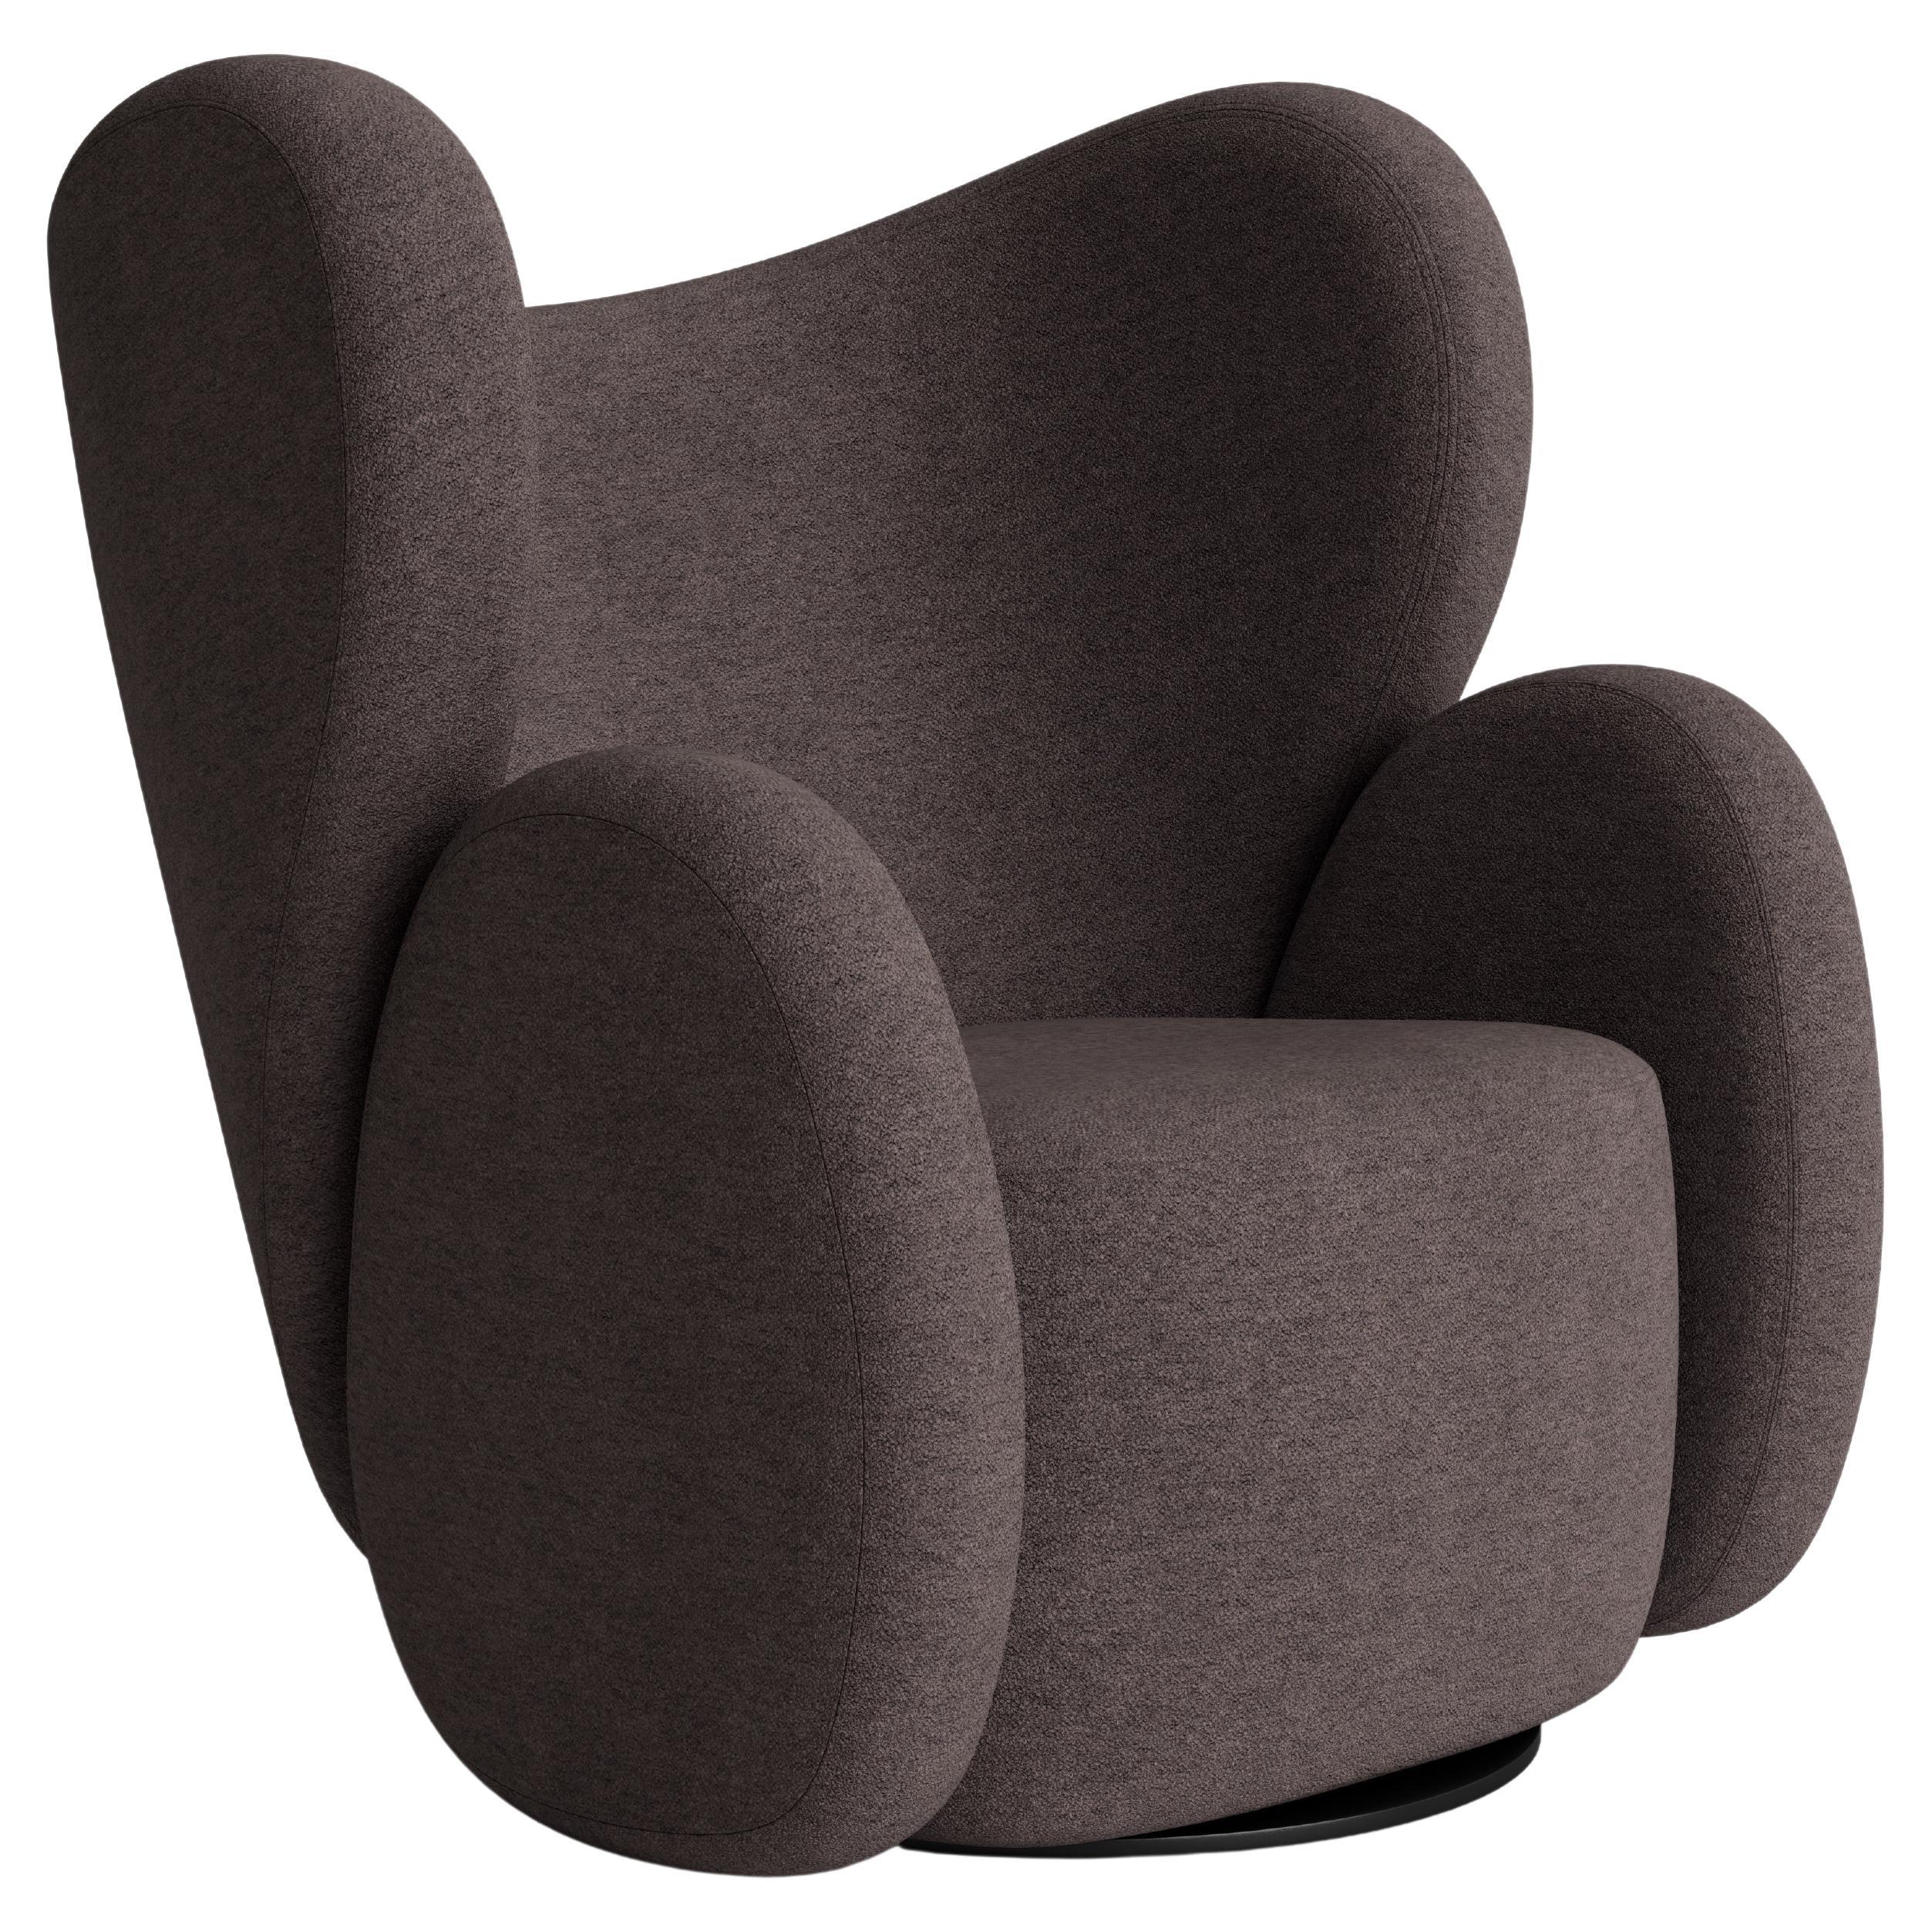 Fauteuil « Big Chair » de Norr11, Barnum Boucl, brun foncé